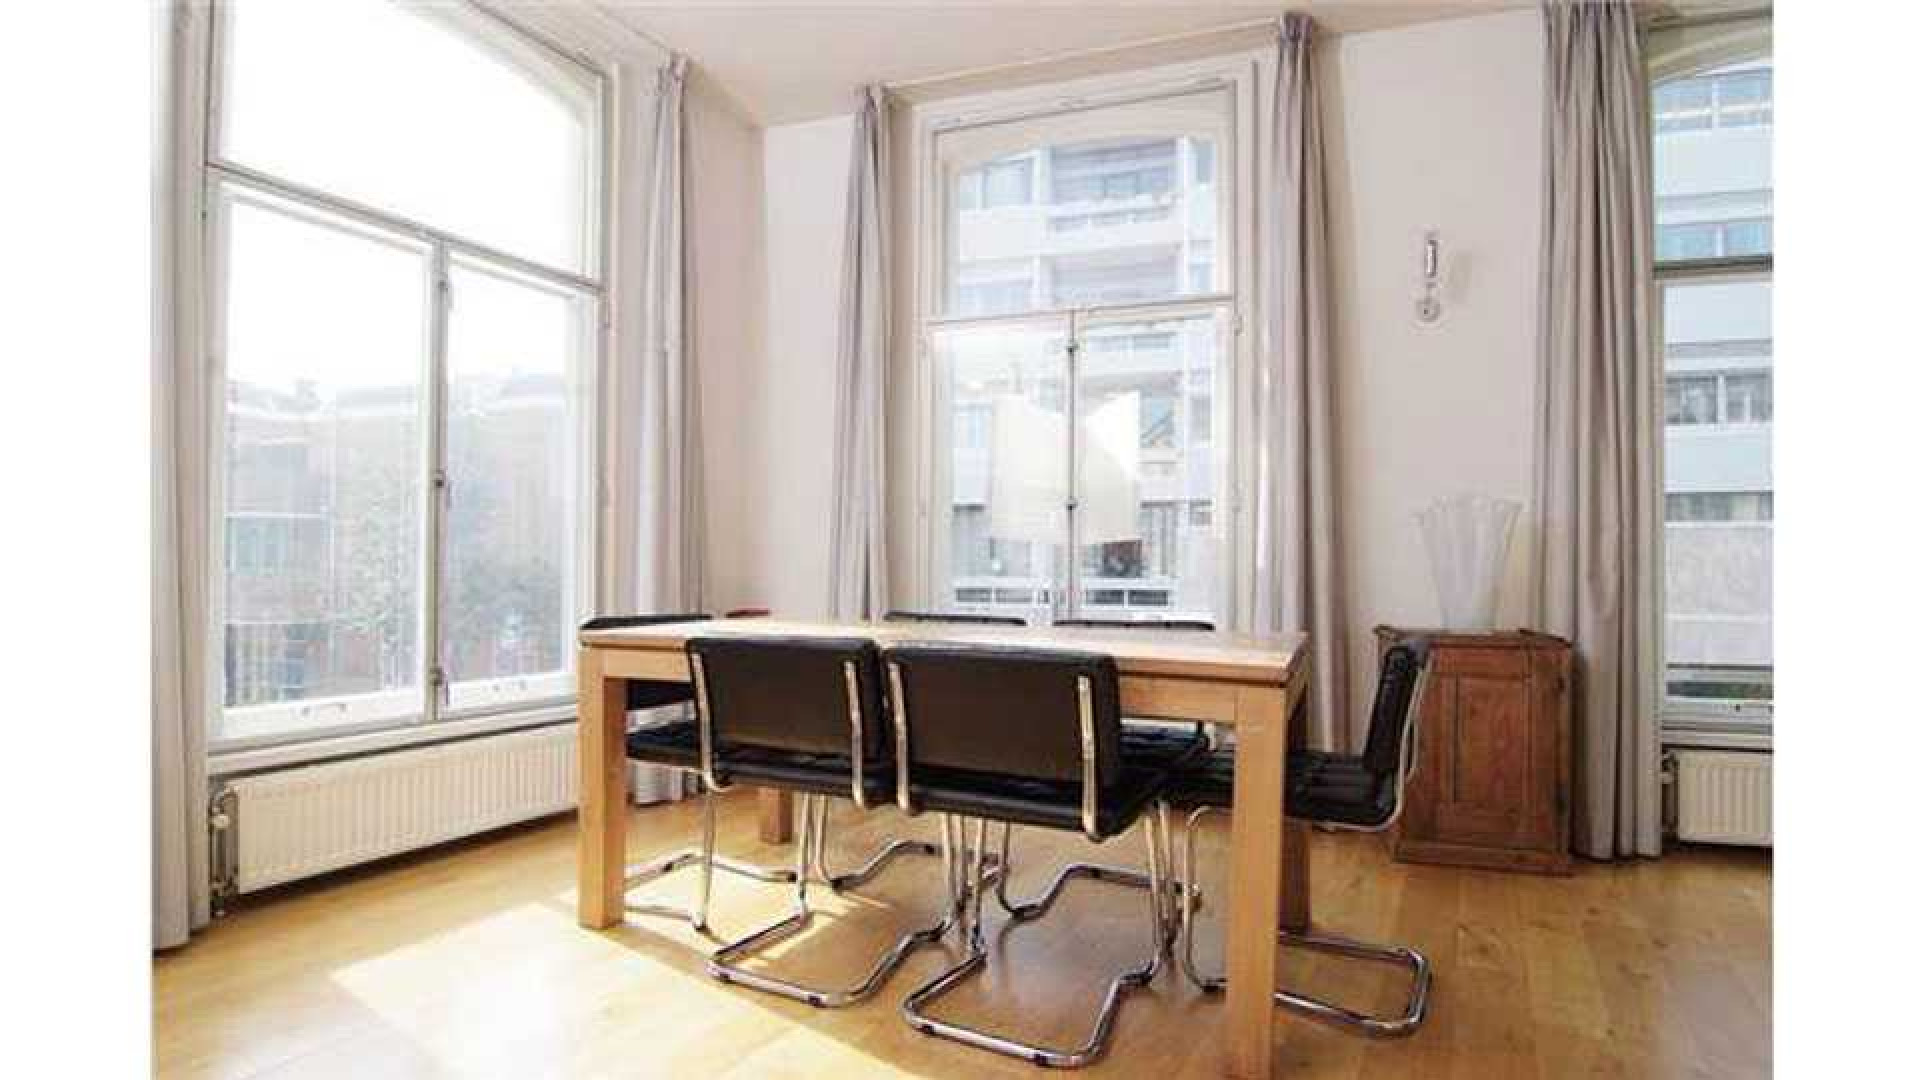 Charles Groenhuijsen huurt leuk appartement in centrum van Utrecht. Zie foto's 8